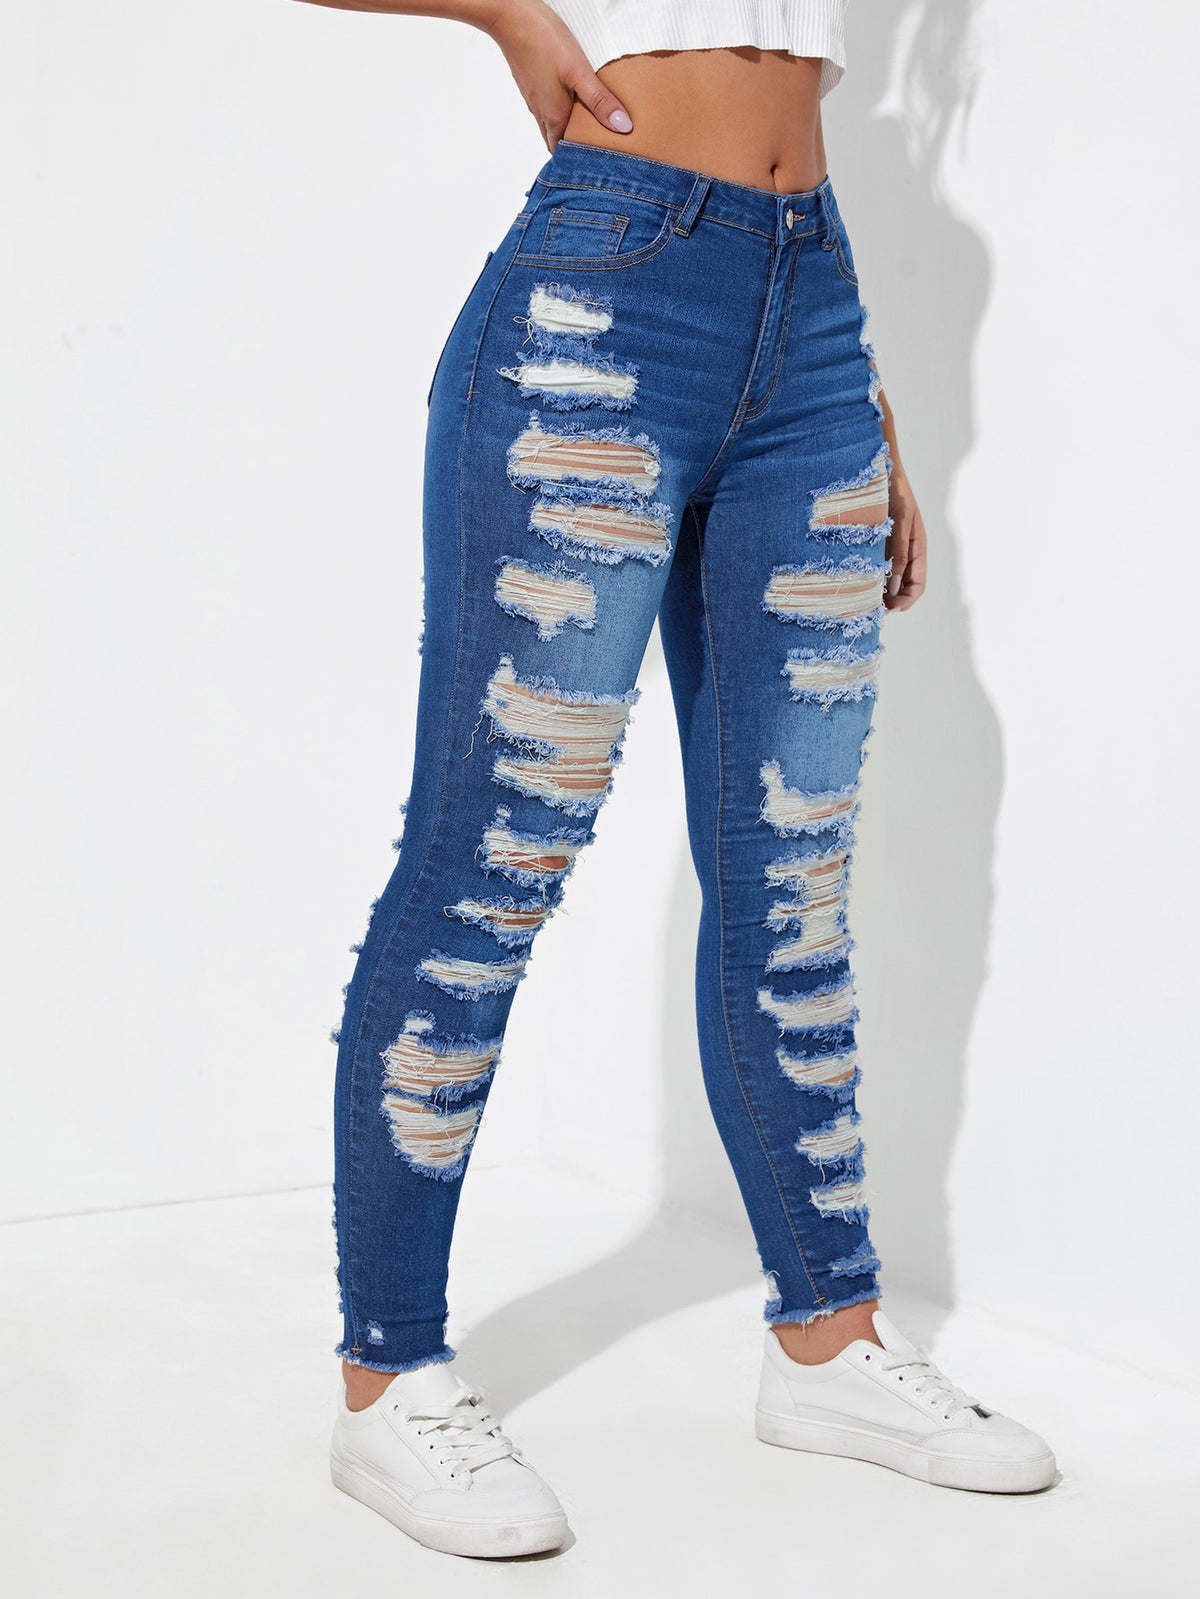 Distressed Skinny Jeans with Raw Hem